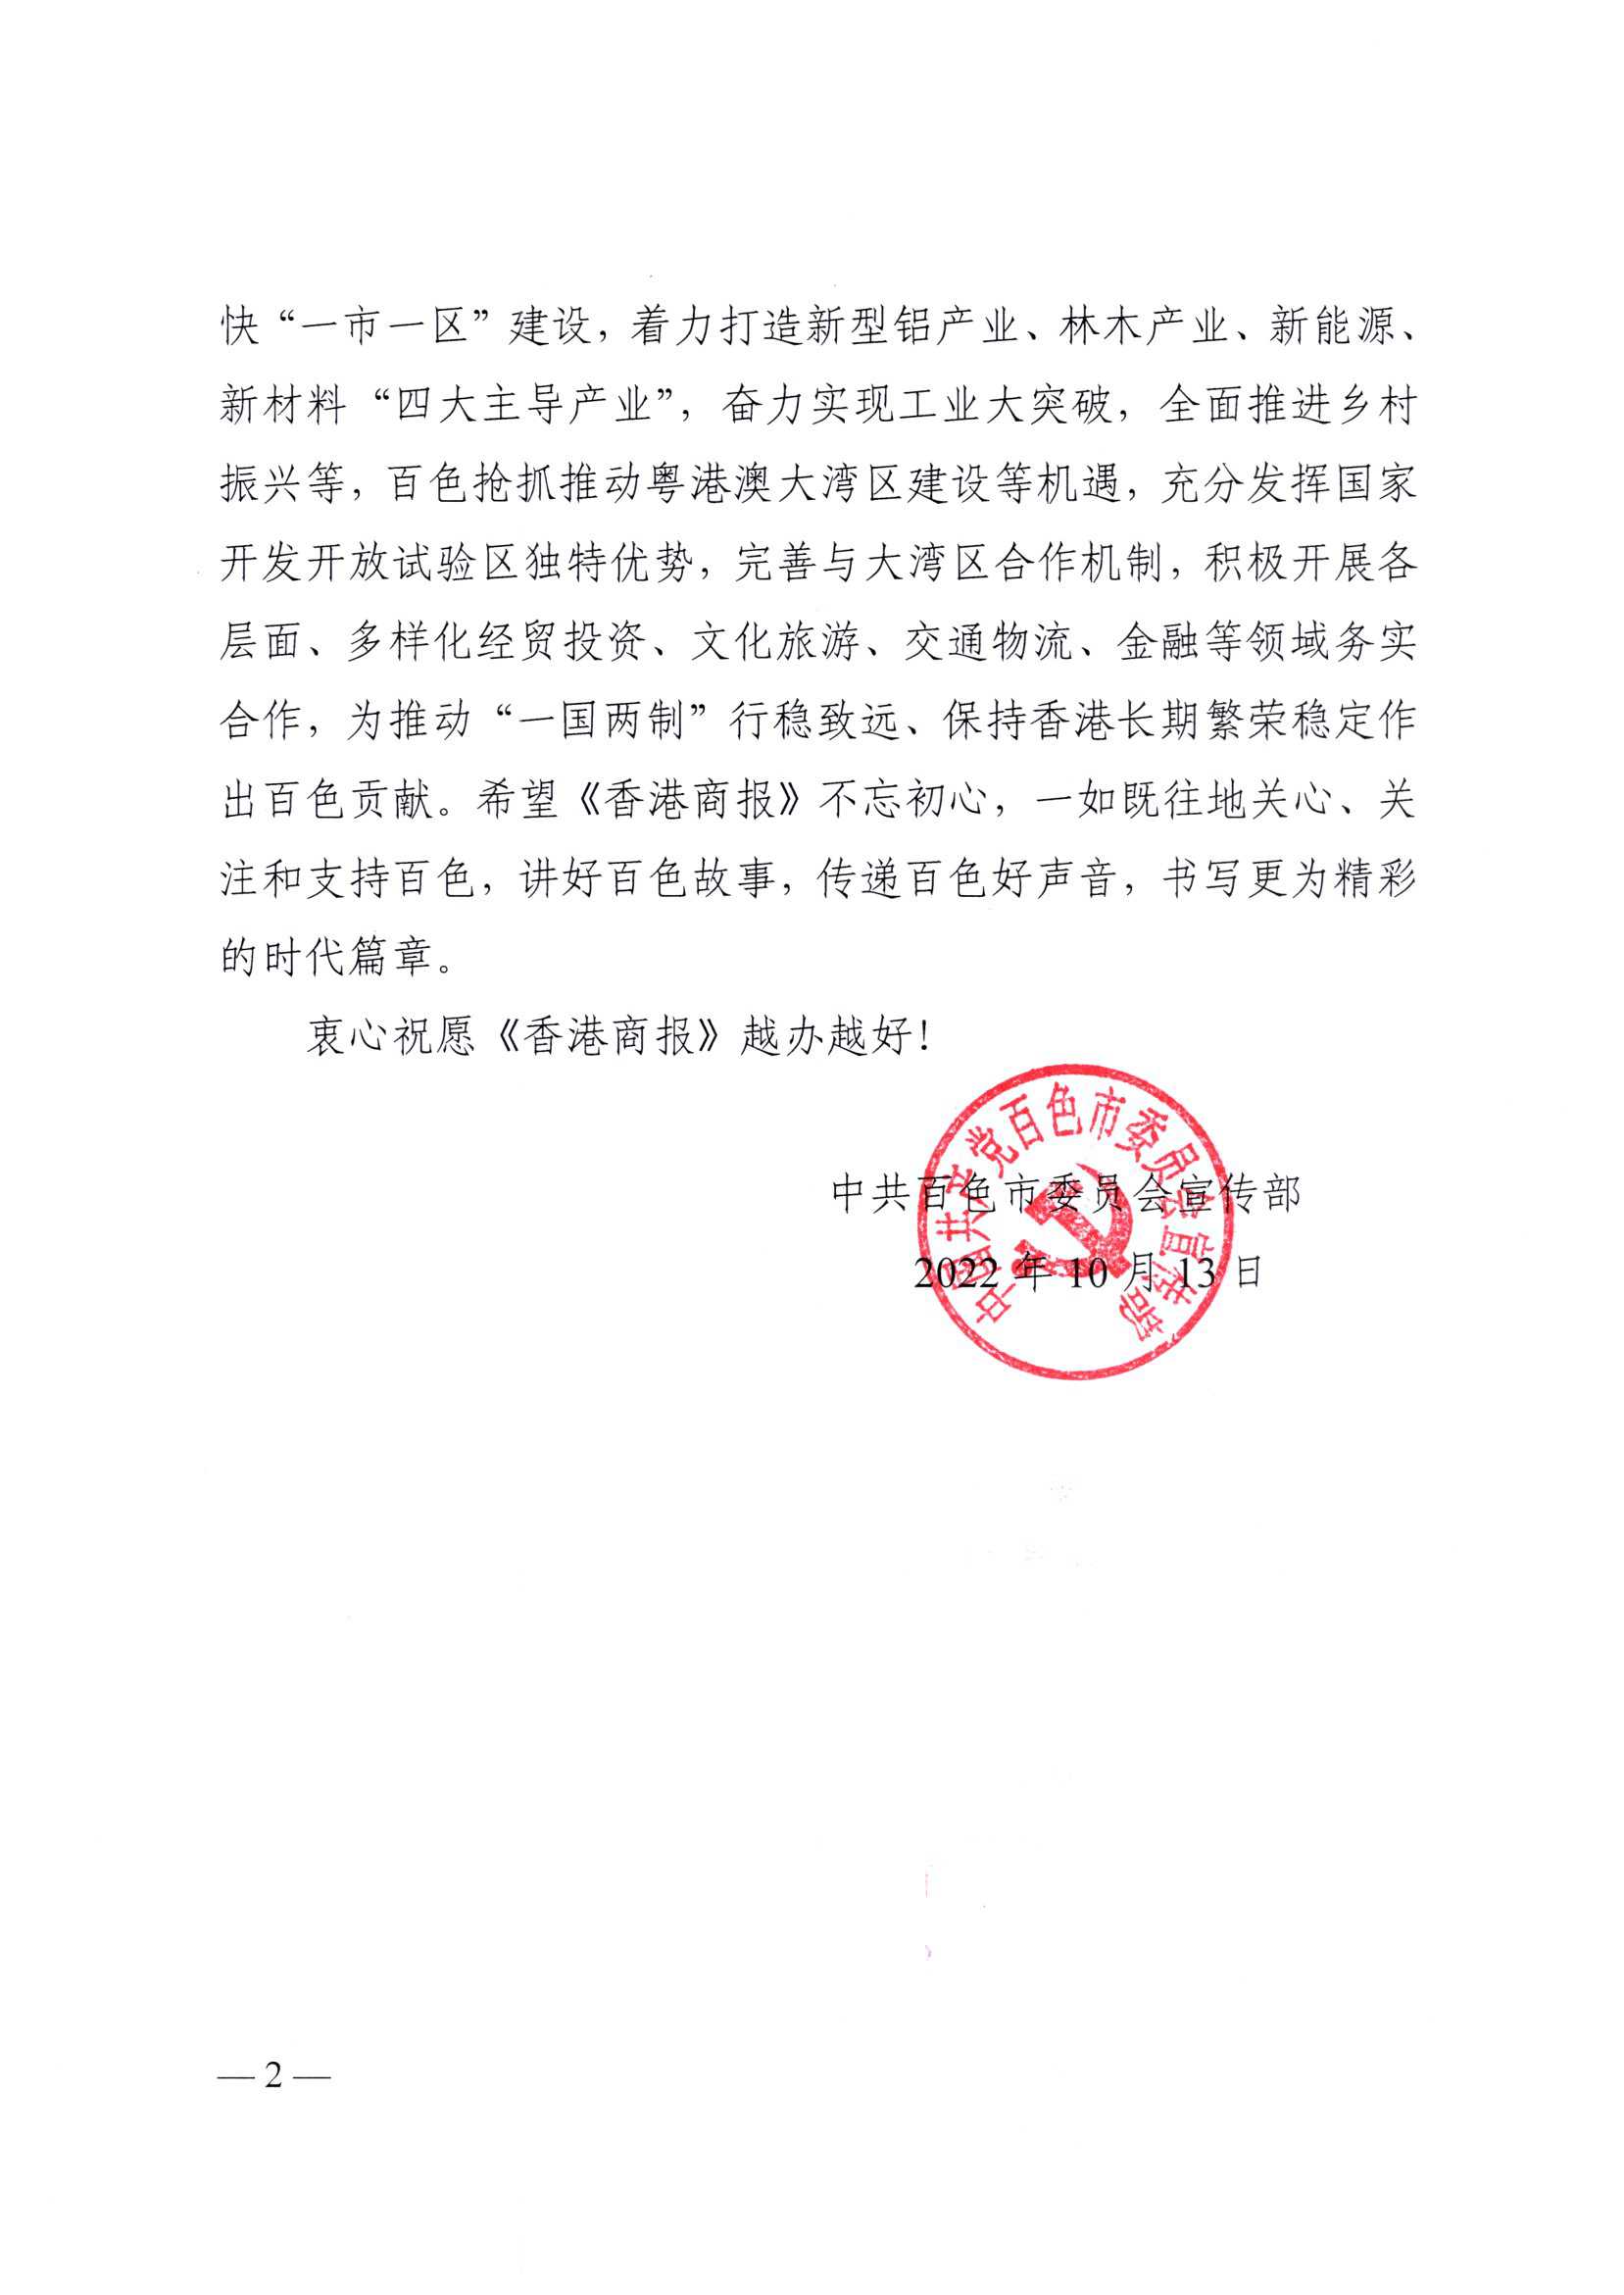 中国共产党百色市委员会宣传部_页面_2.jpg